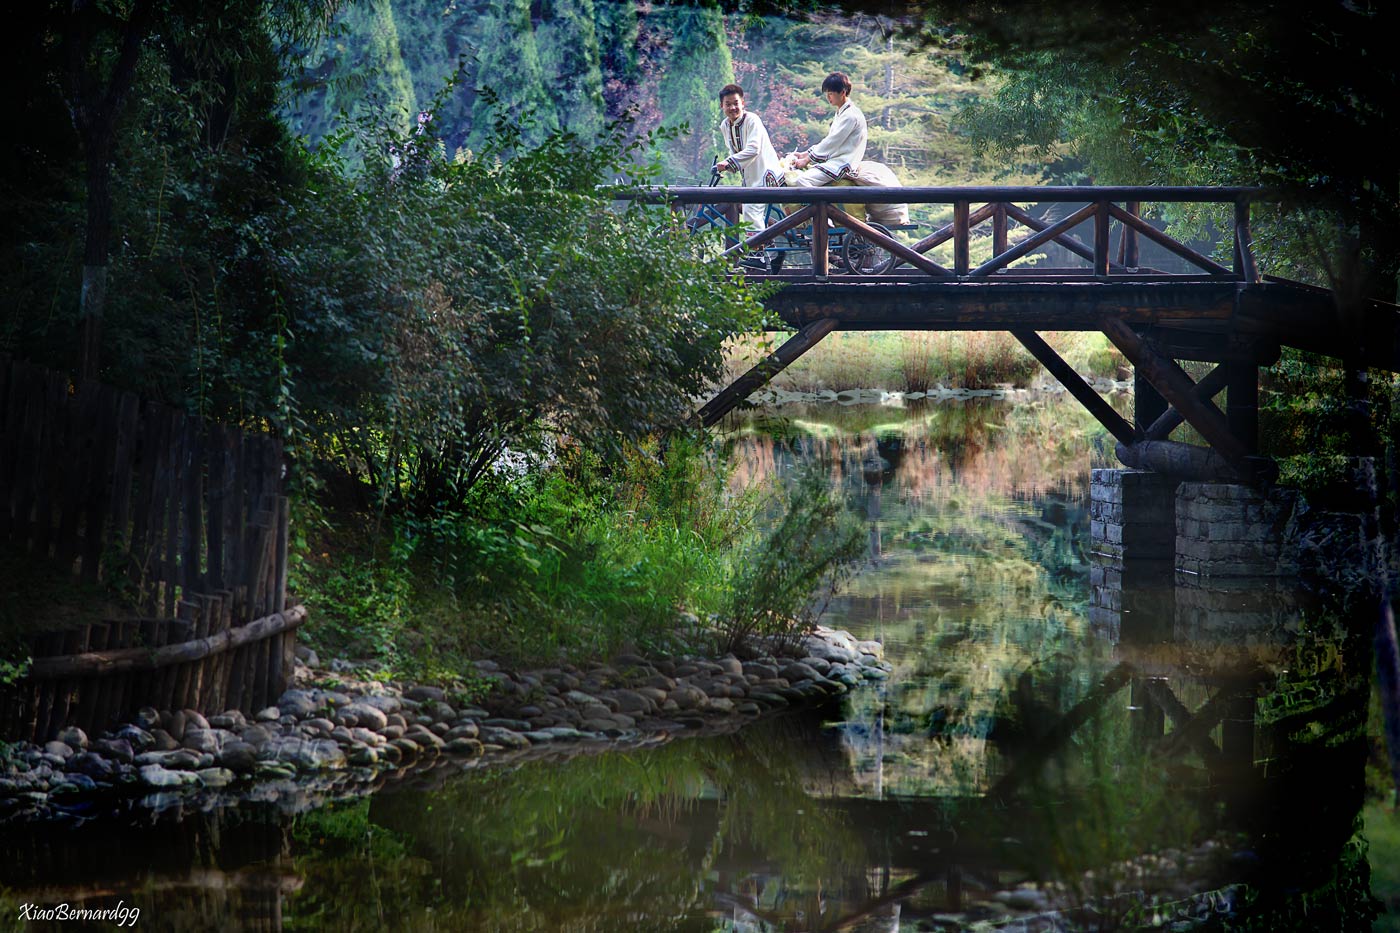 The Little Bridge of Ethnic Cultural Park